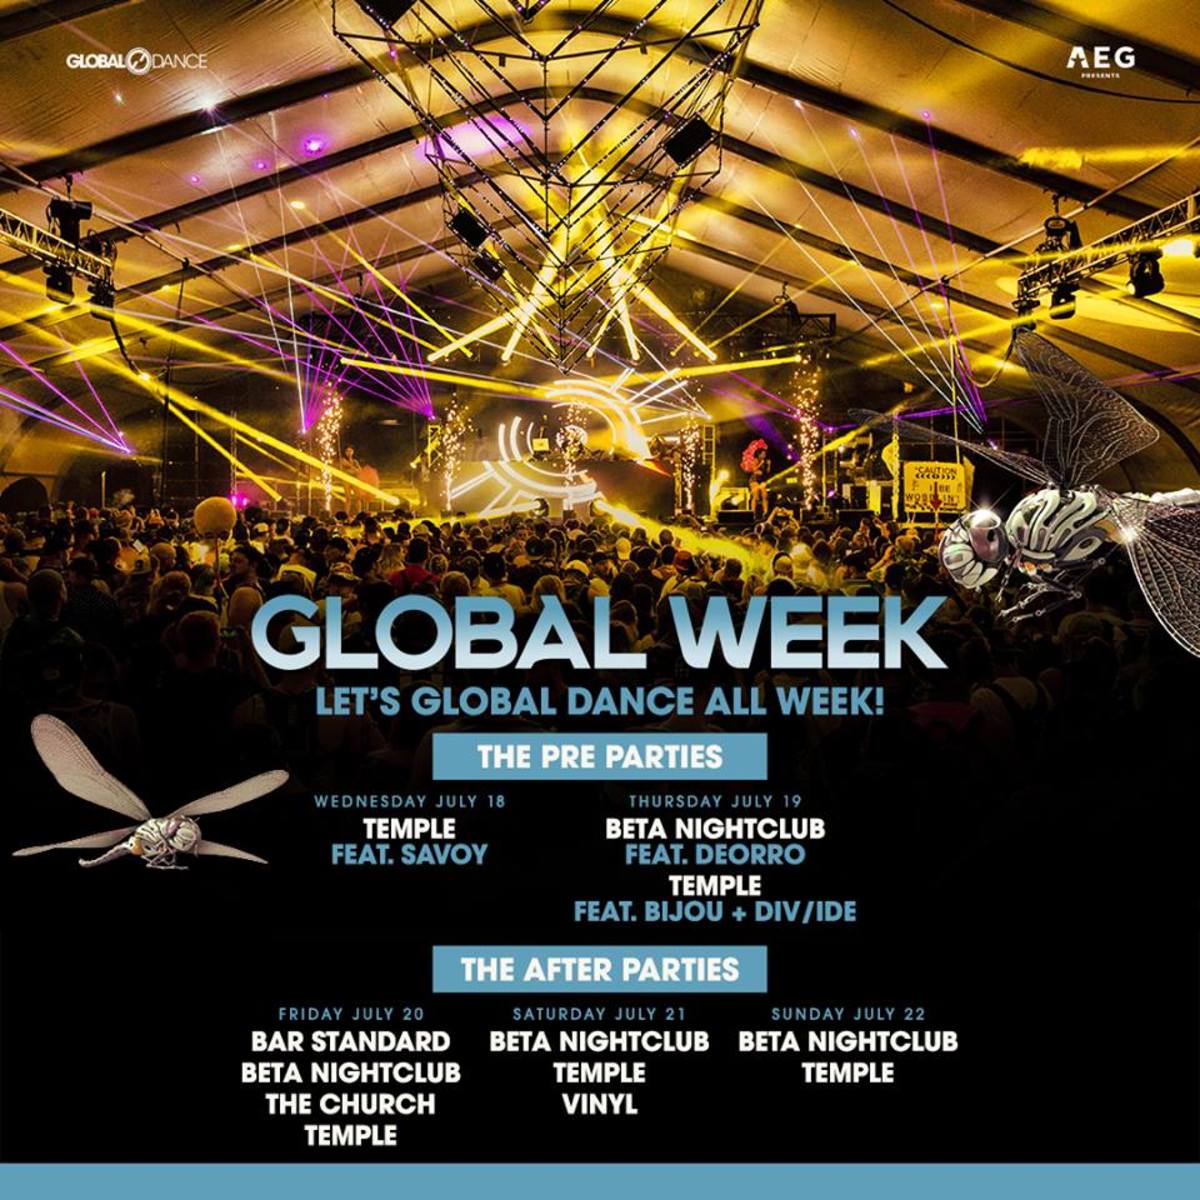 Global Week